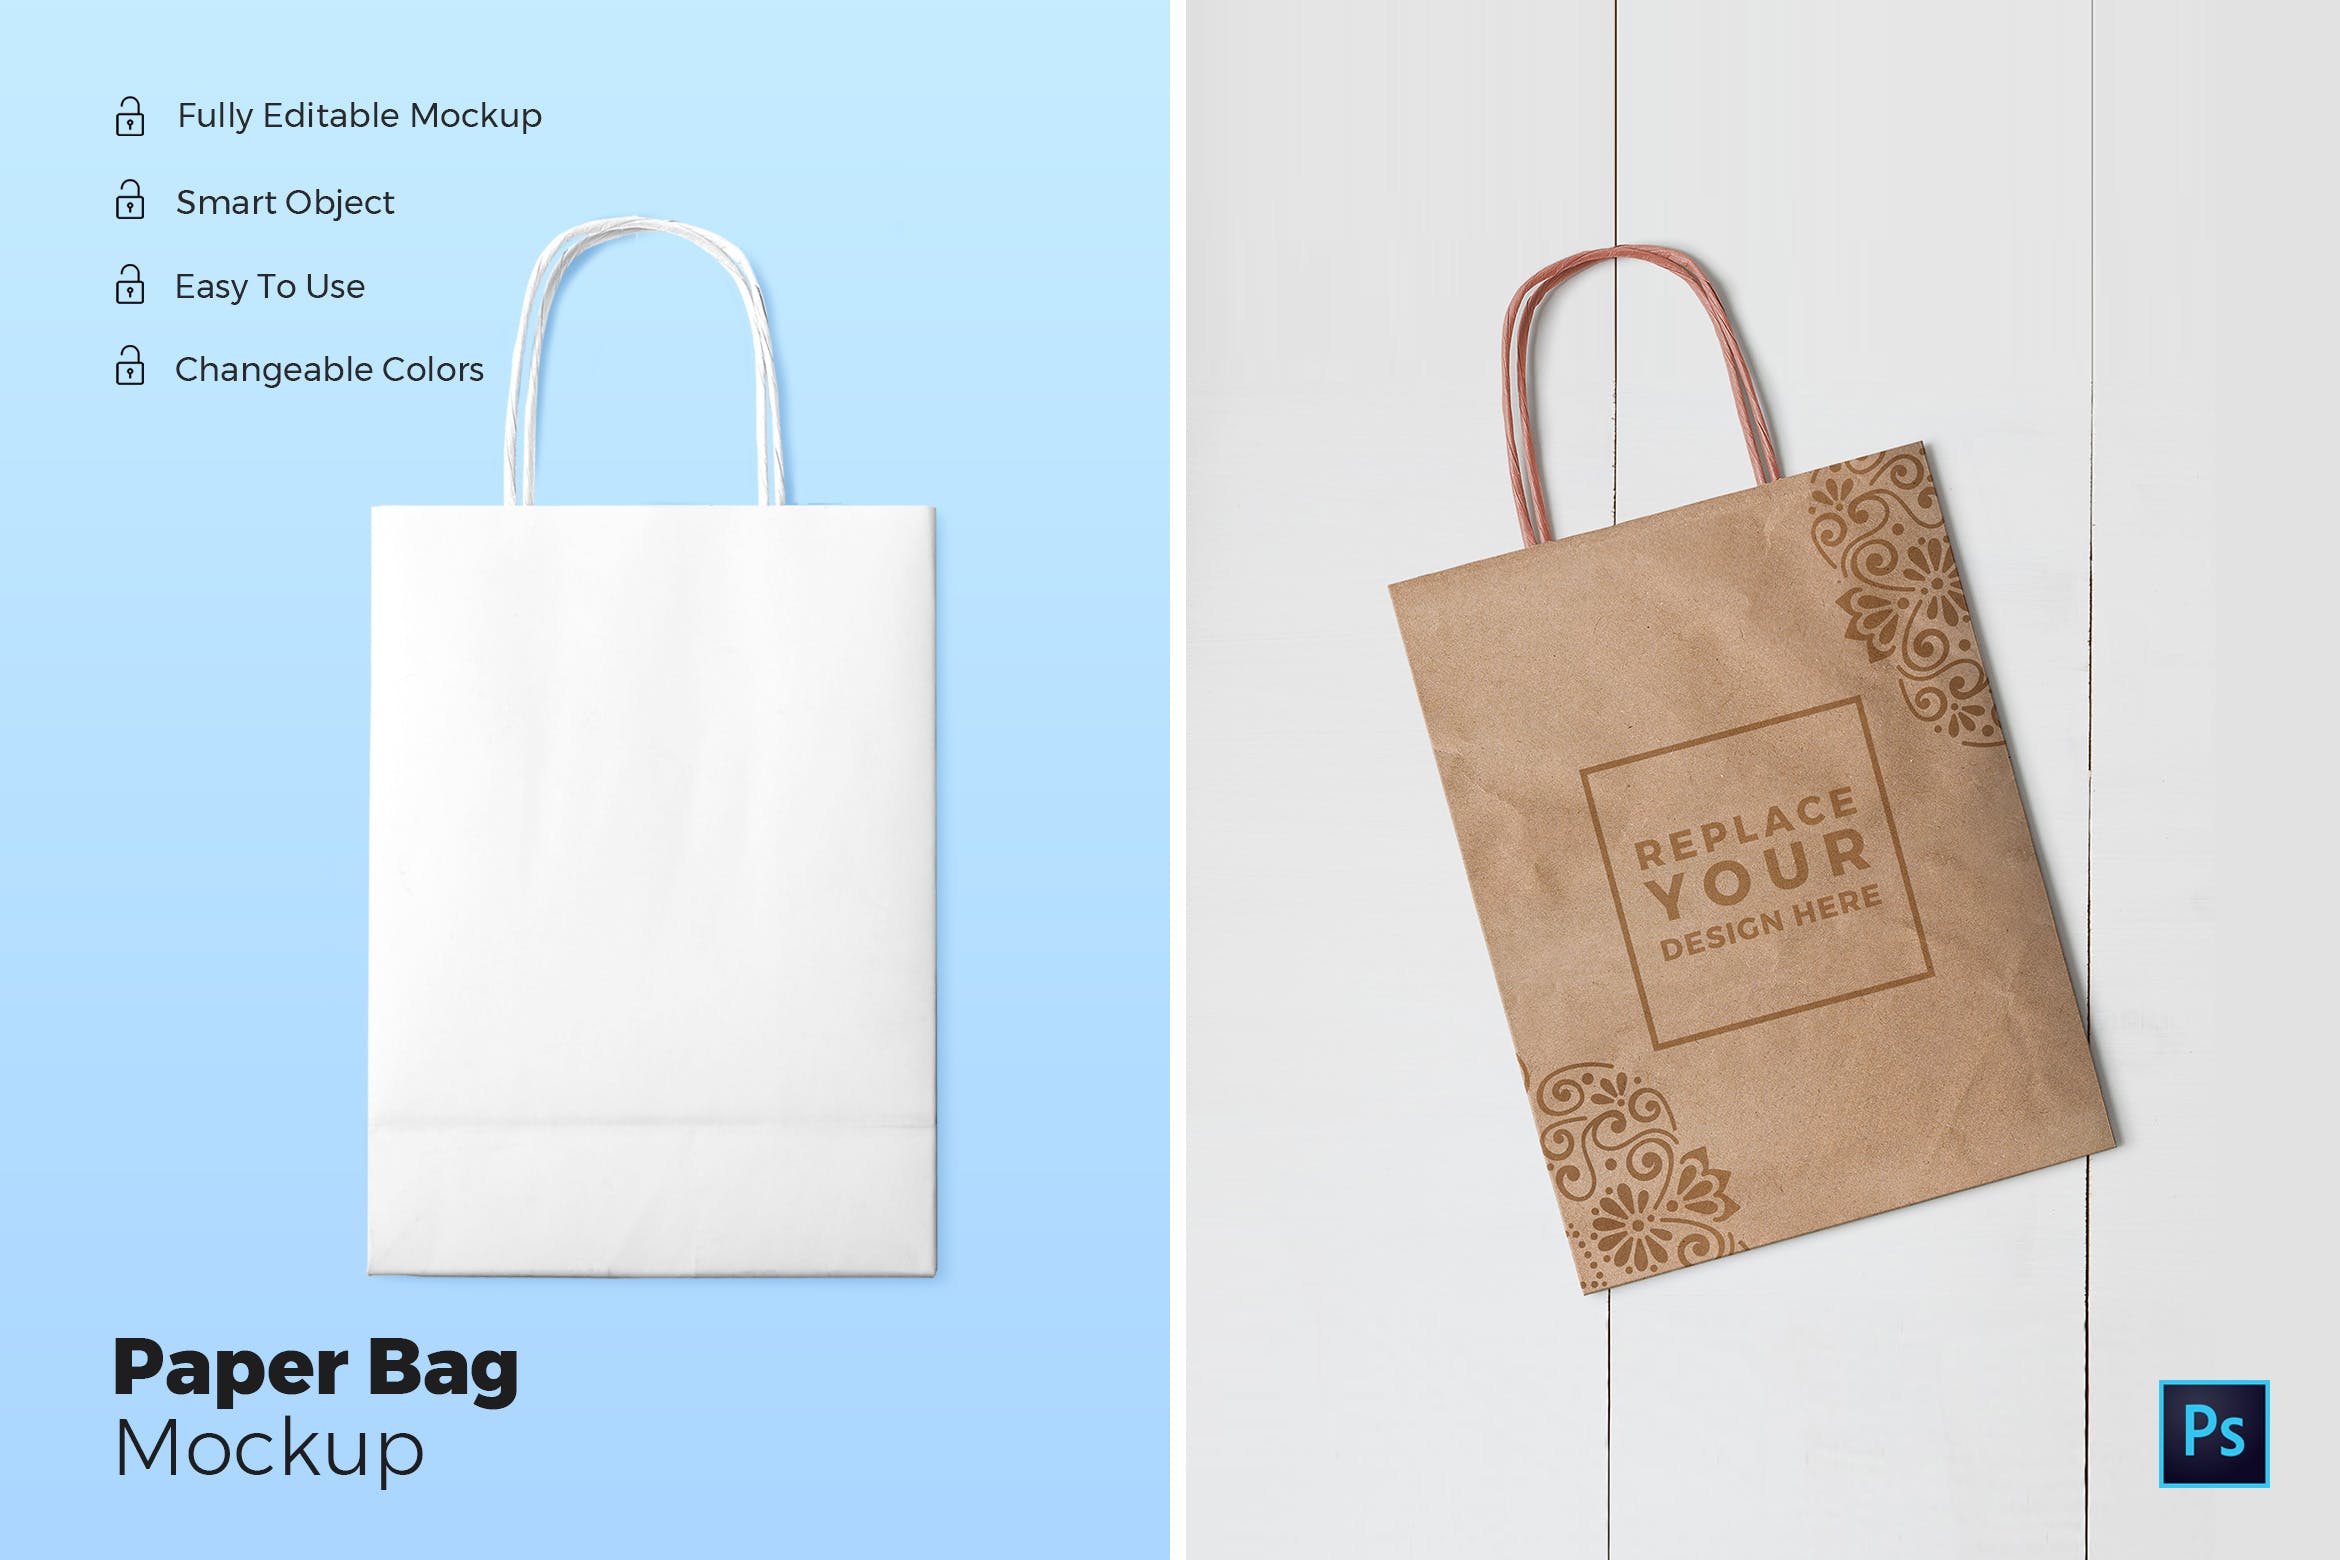 购物纸袋/牛皮纸袋外观设计展示图样机 Paper Bag Mockups插图